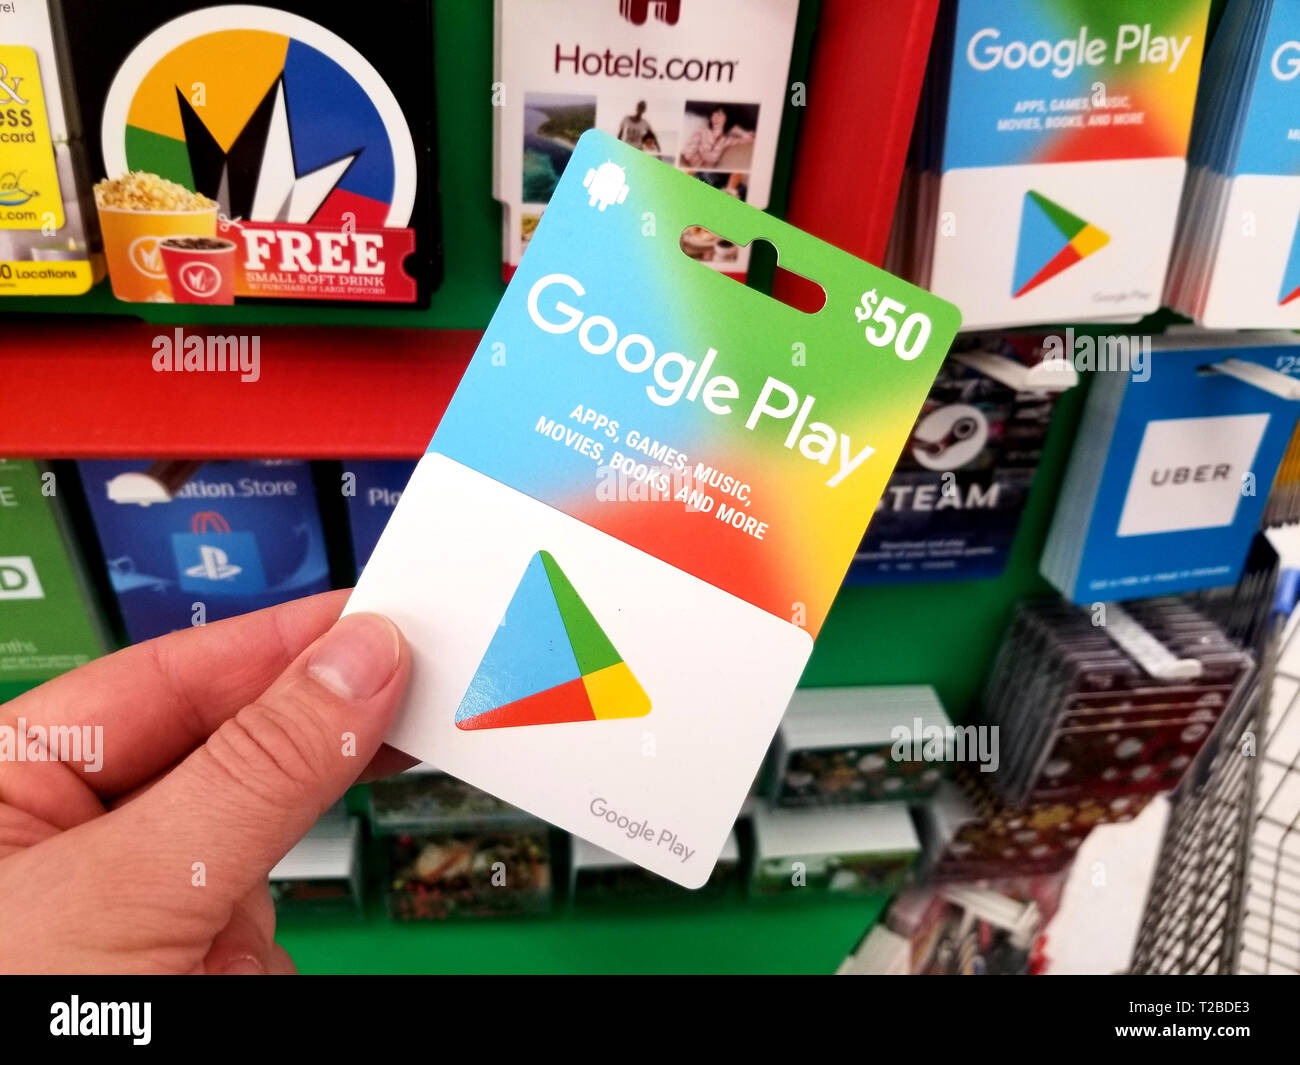 Google Play Store : comment utiliser une carte cadeau prépayée